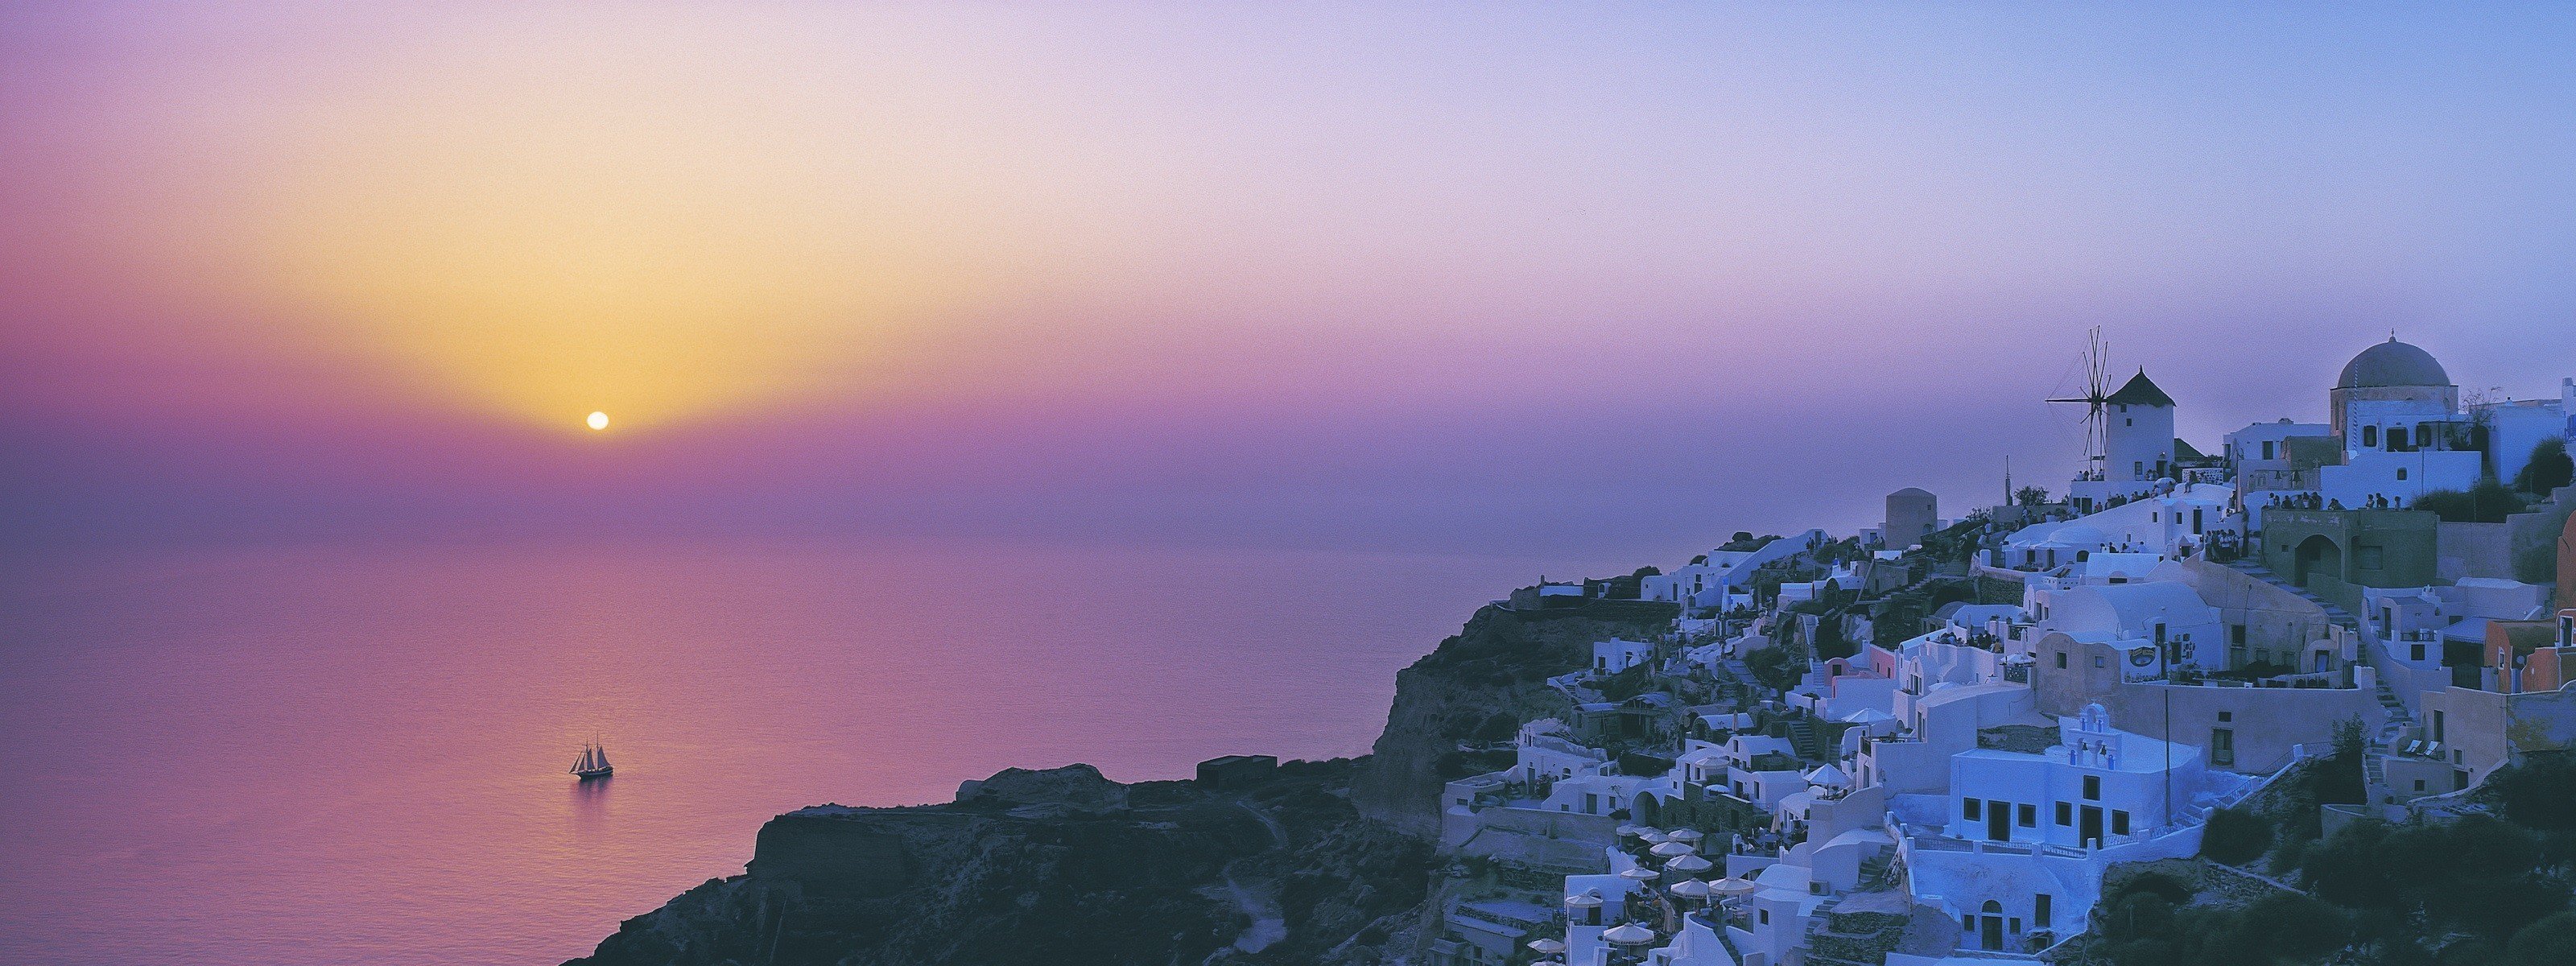 Santorini – hòn đảo thơ mộng nổi tiếng với những ngôi nhà trắng xây dựng trên những con đồi đá vôi. Hình ảnh đưa bạn đến những bãi biển lấp lánh, những cung đường hẹp buốt, và những ngọn đèn pha lê lấp lánh trên bờ biển.